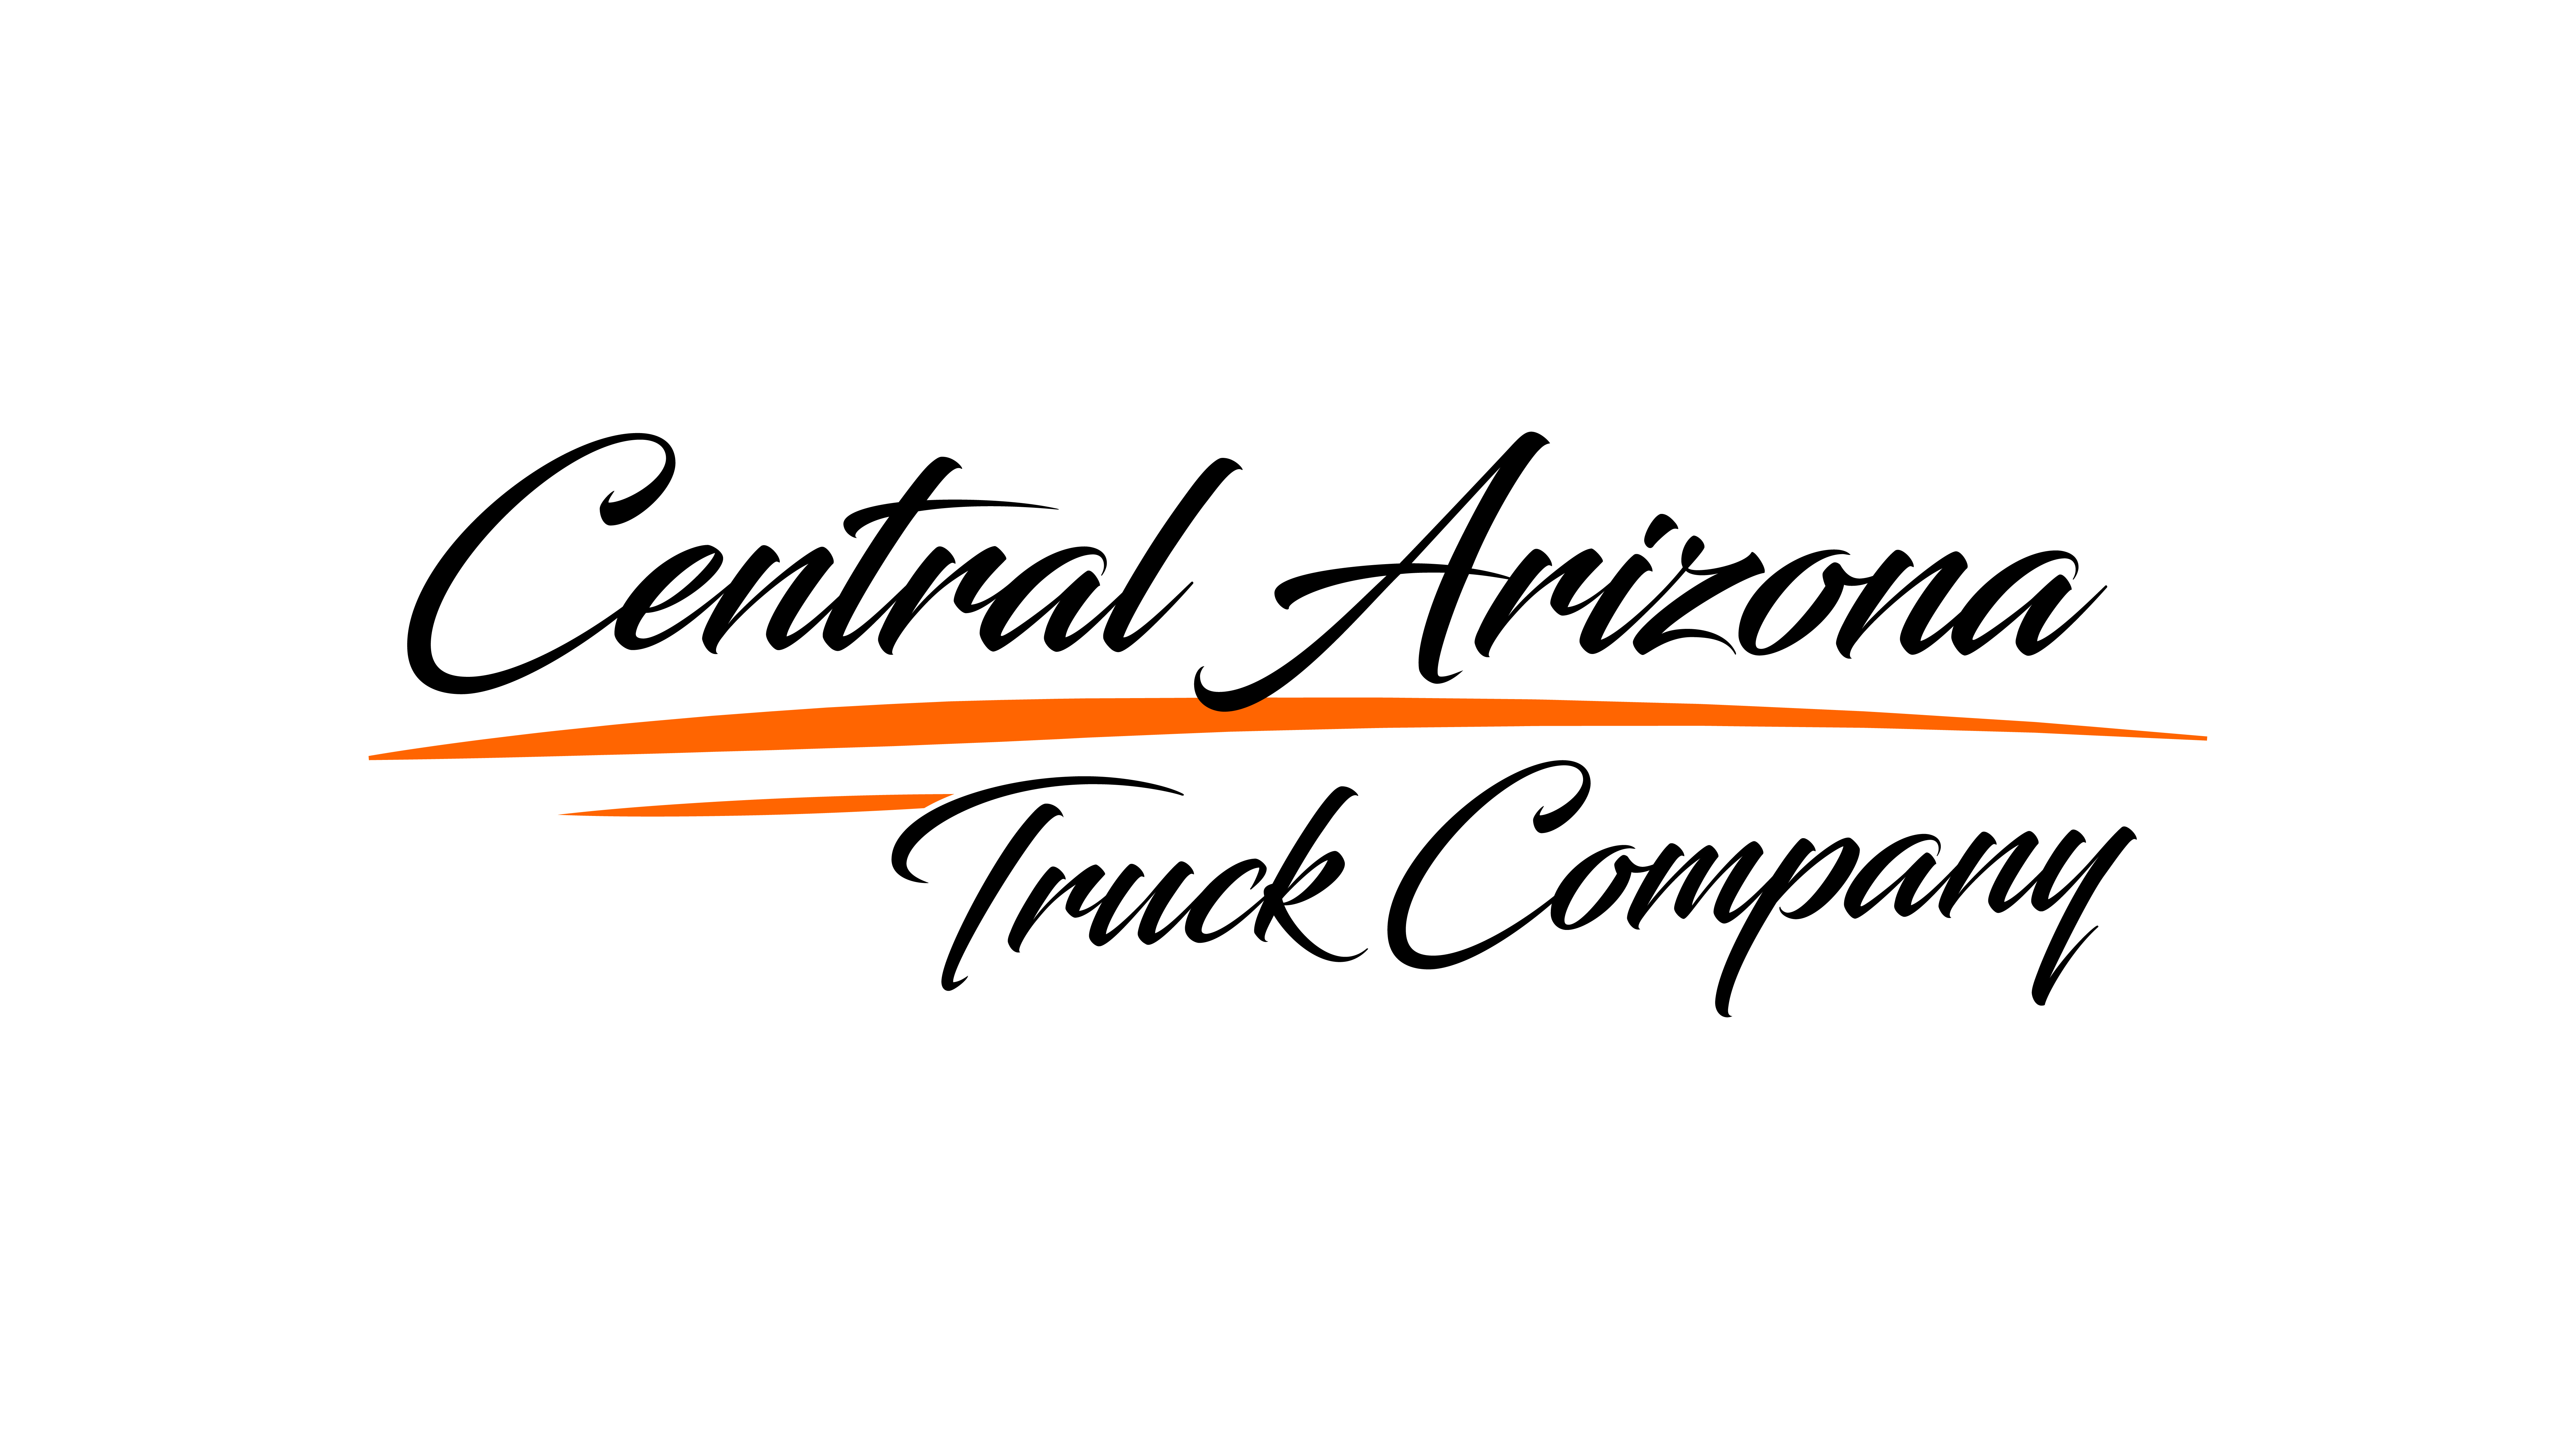 Central Arizona Truck Company